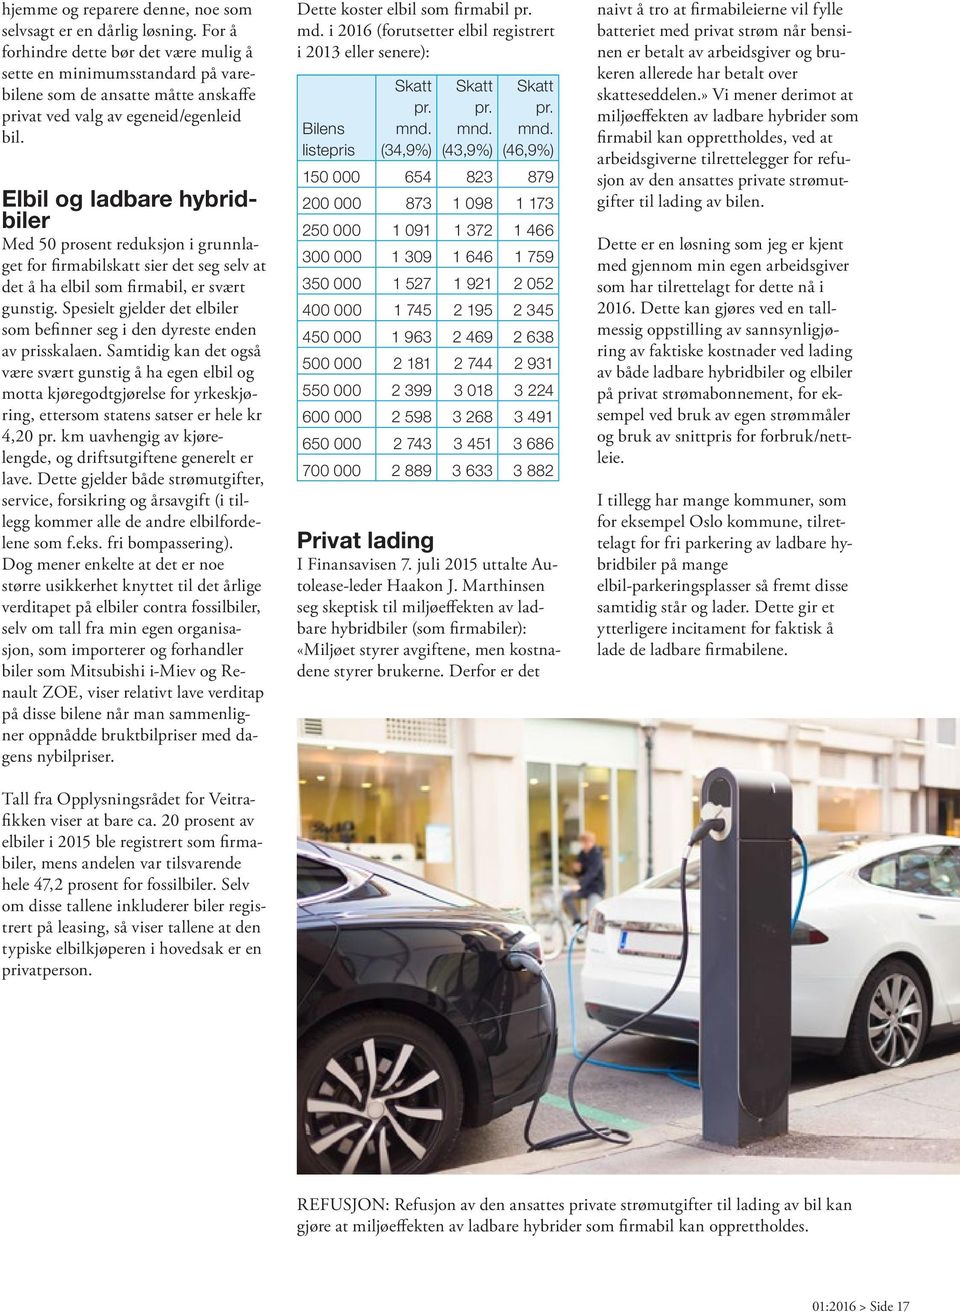 Elbil og ladbare hybridbiler Med 50 prosent reduksjon i grunnlaget for firmabilskatt sier det seg selv at det å ha elbil som firmabil, er svært gunstig.